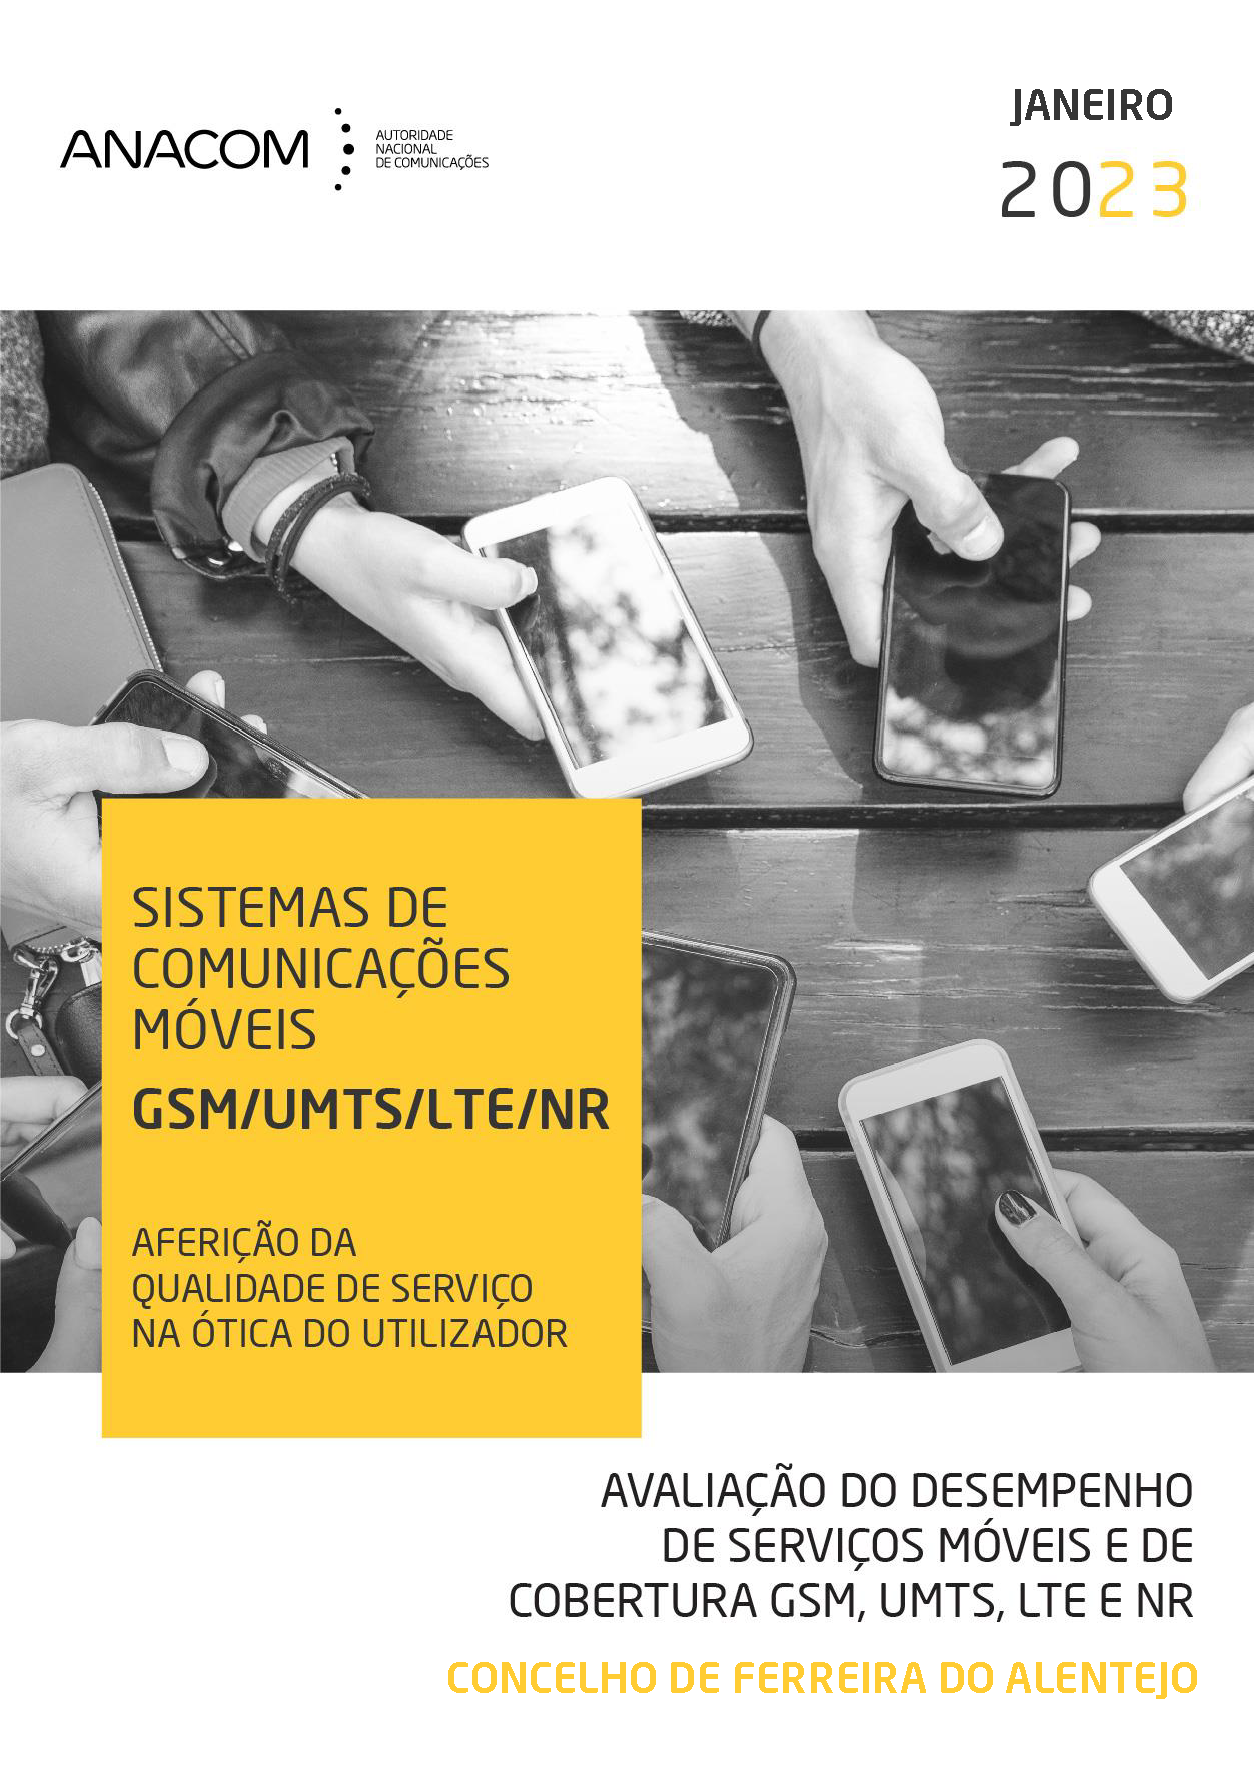 Avaliação do desempenho de serviços móveis e de cobertura GSM, UMTS, LTE e NR no Concelho de Ferreira do Alentejo